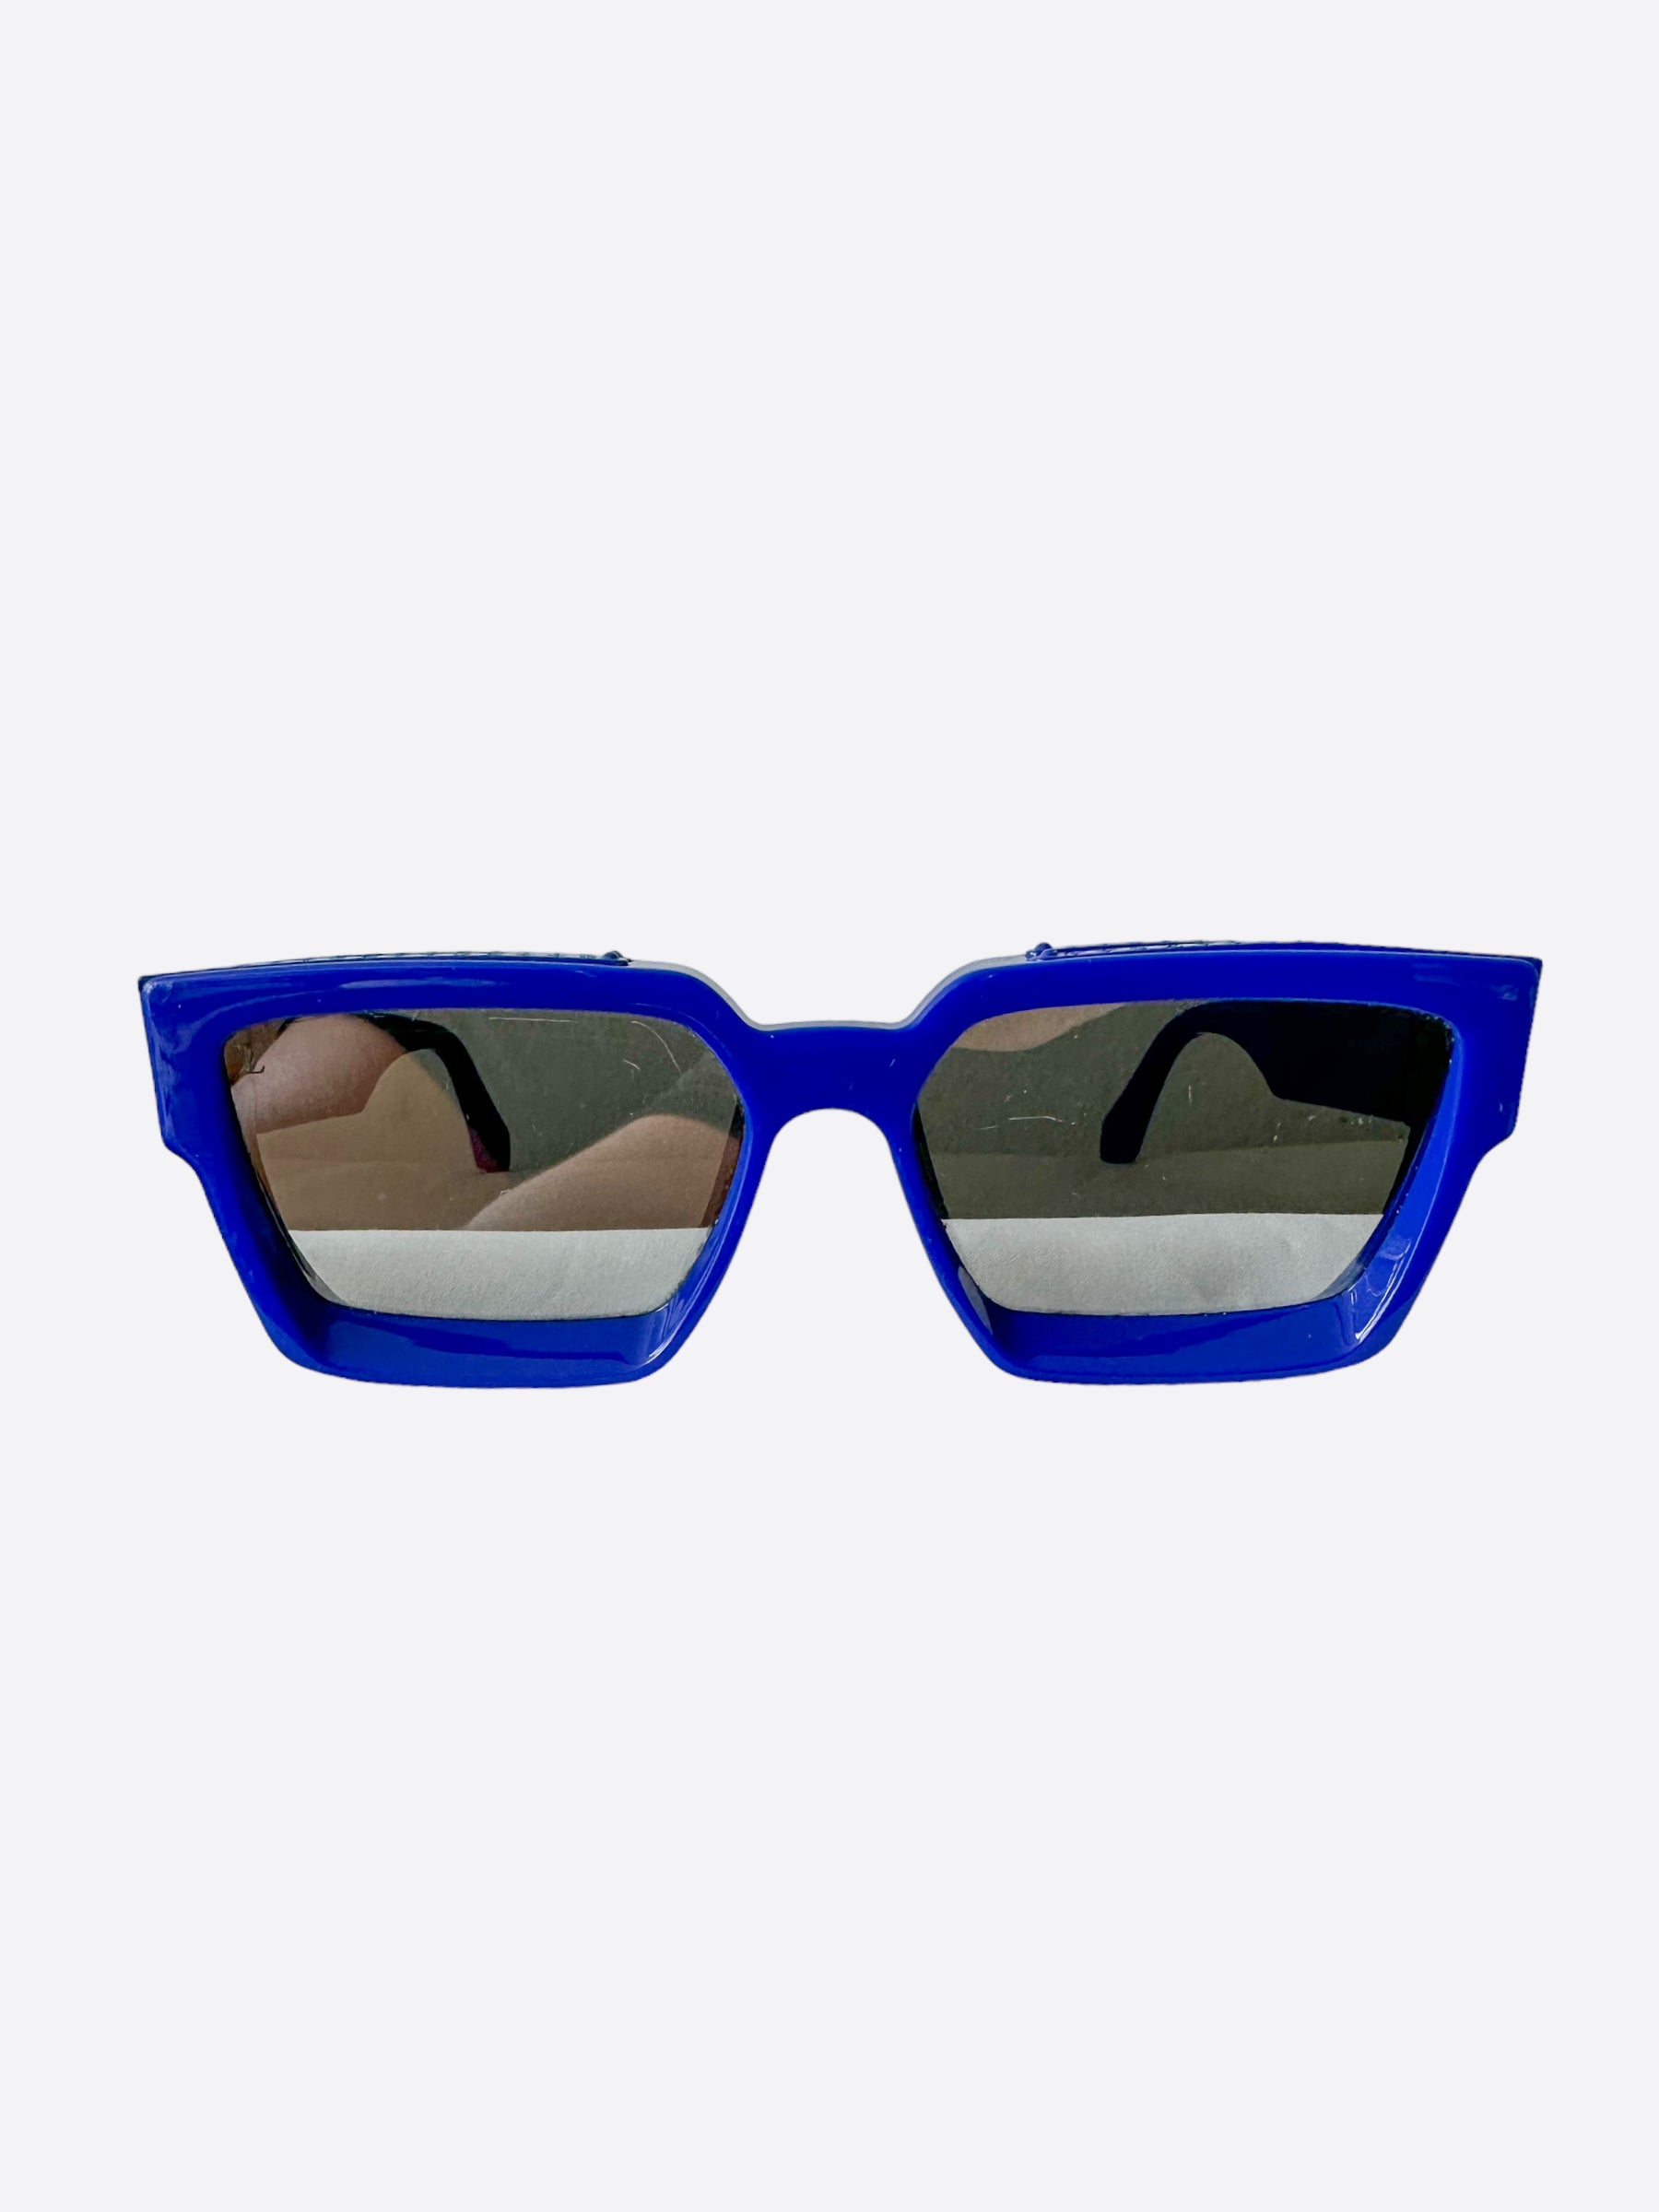 LOUIS VUITTON 1.1 Millionaires Sunglasses - Beige